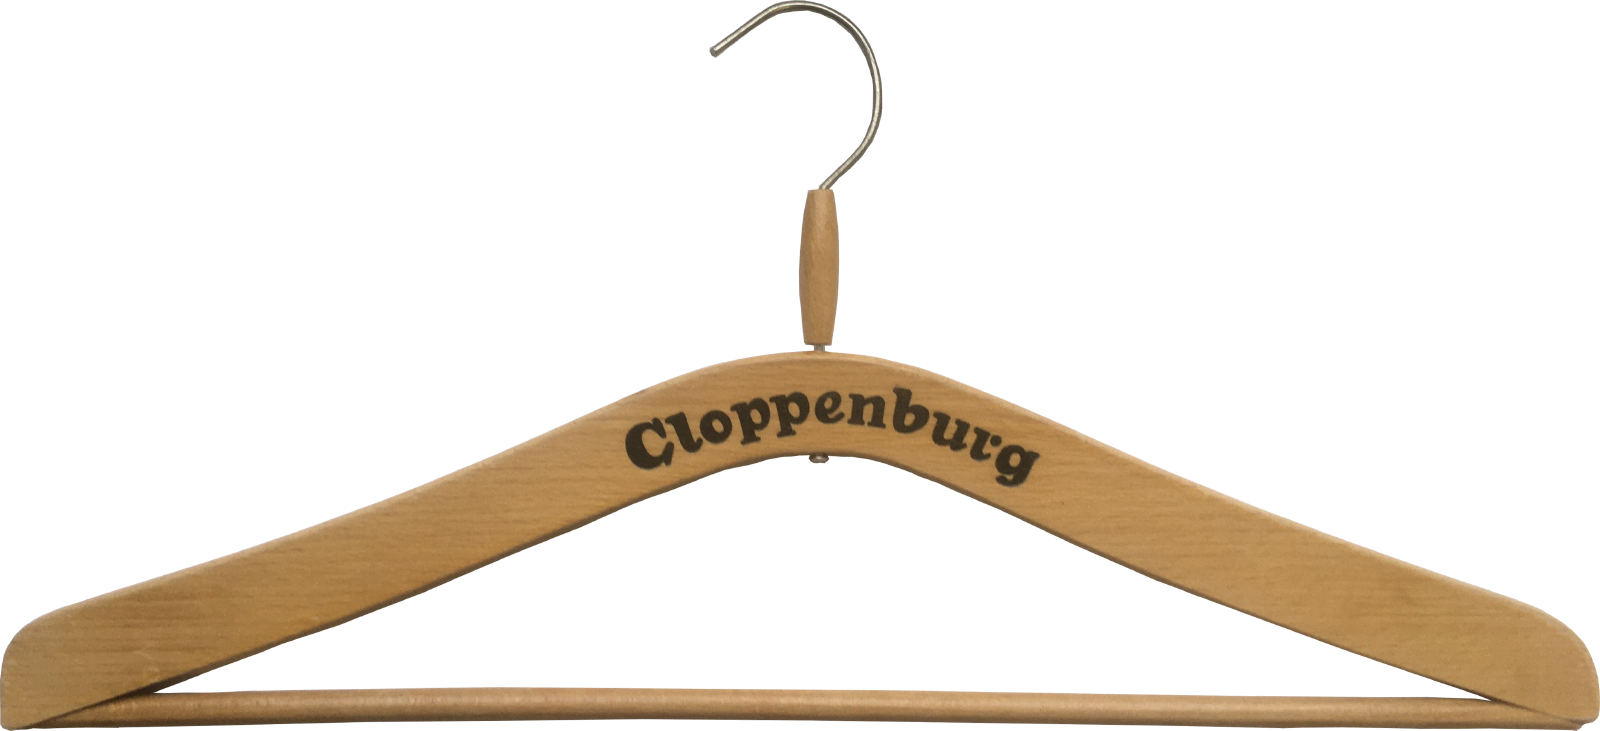 Cloppenburg